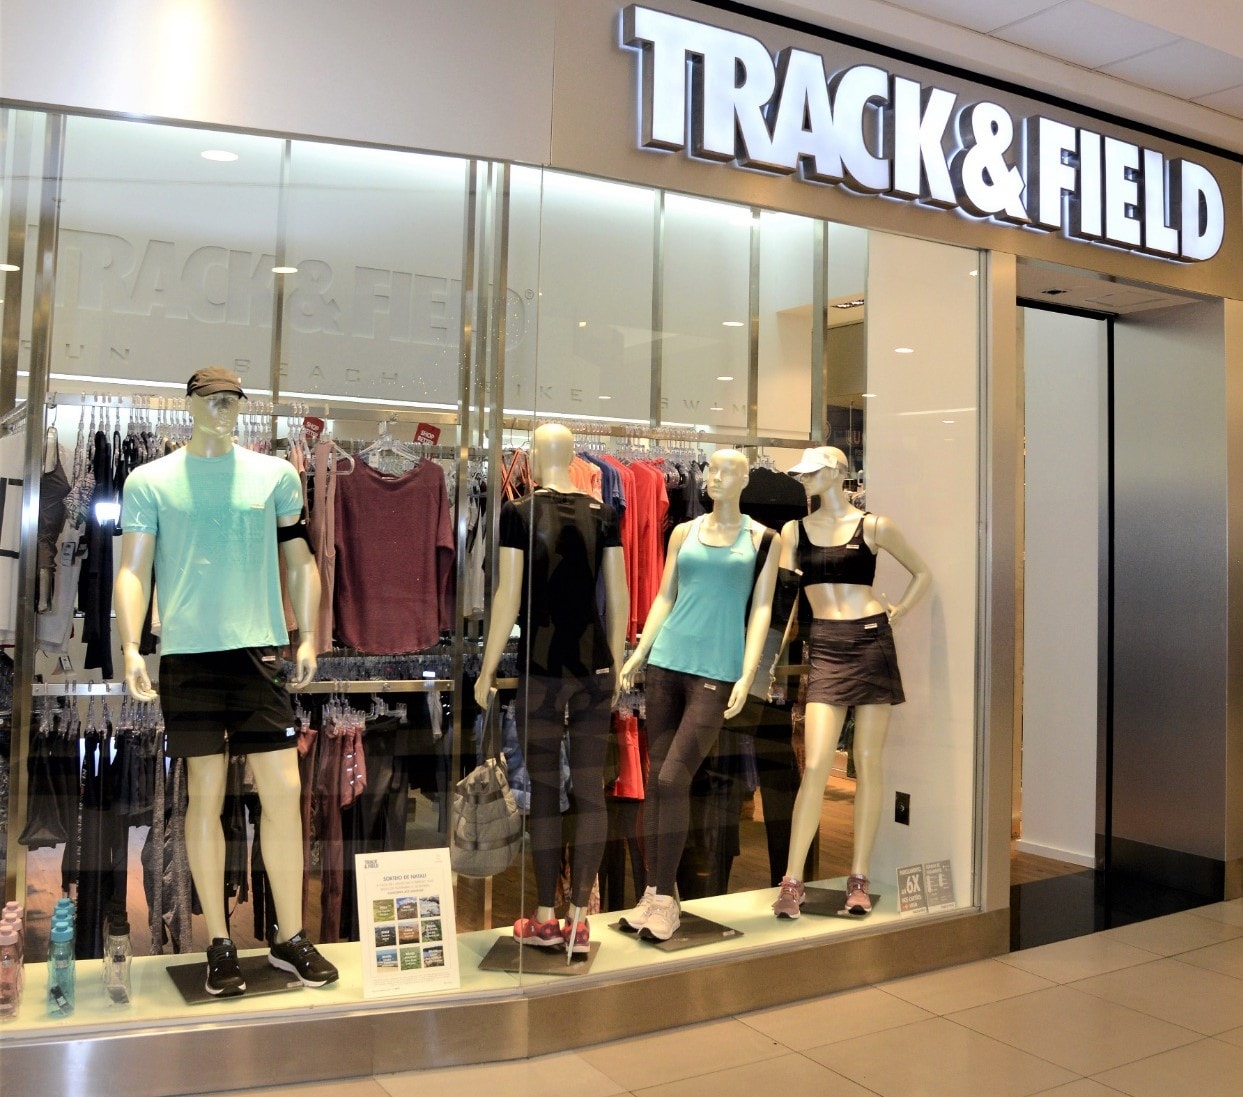 Track & Field (TFCO4) anuncia Fernando Tracanella como CEO e mais mudanças  na alta administração da empresa